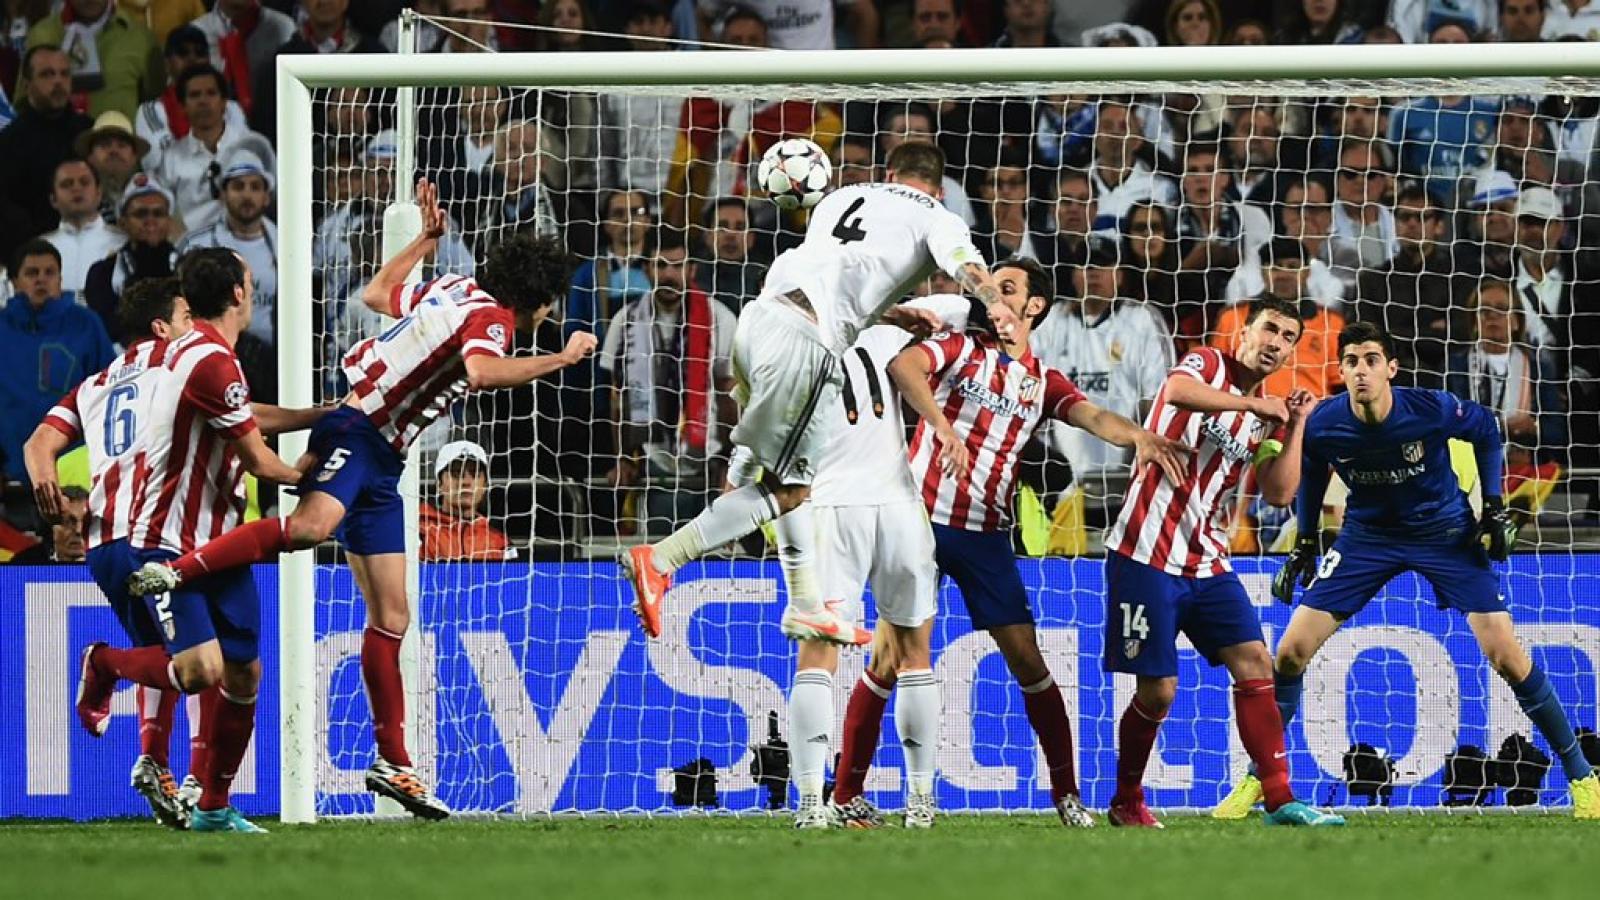 Imagen Su gol más emblemático con la camiseta merengue. Final de Champions League, minuto 93, para el 1-1 frente al Atlético que llevó el partido al alargue en Lisboa.